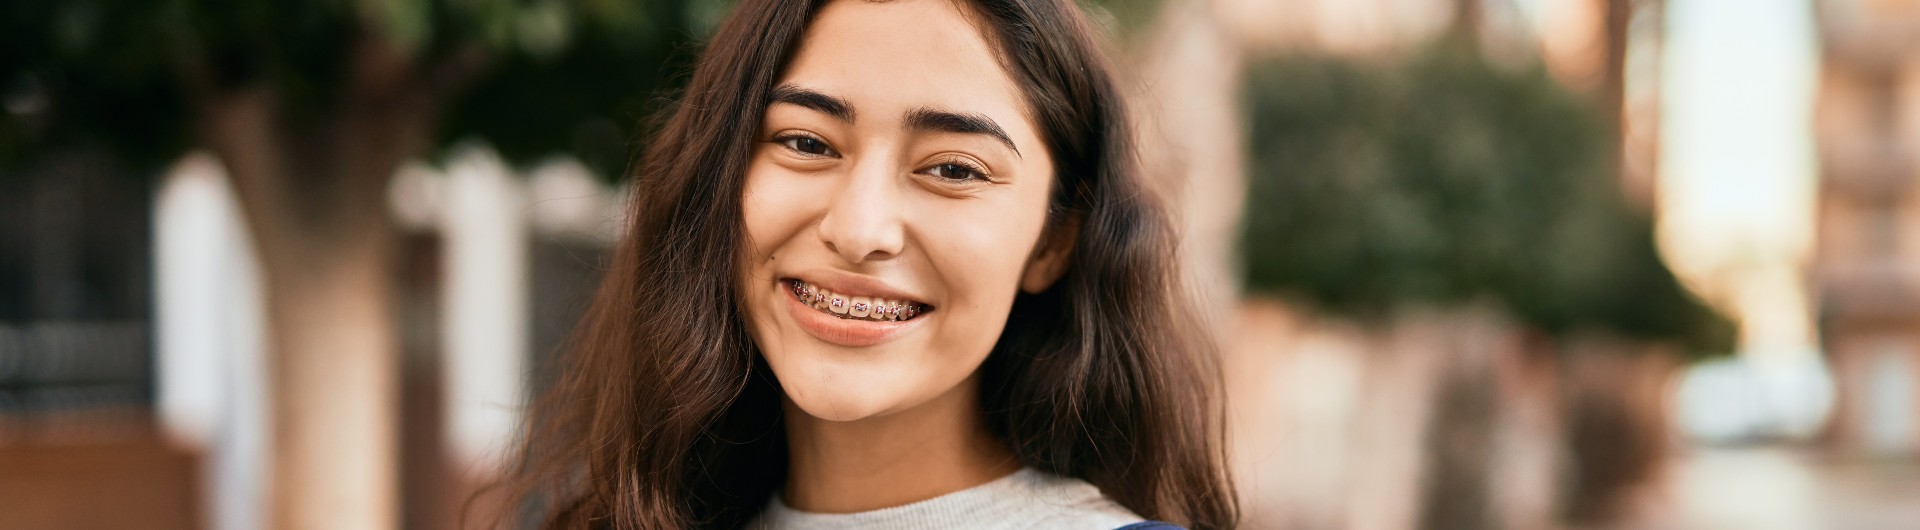 Foto de una joven sonriendo a la camara